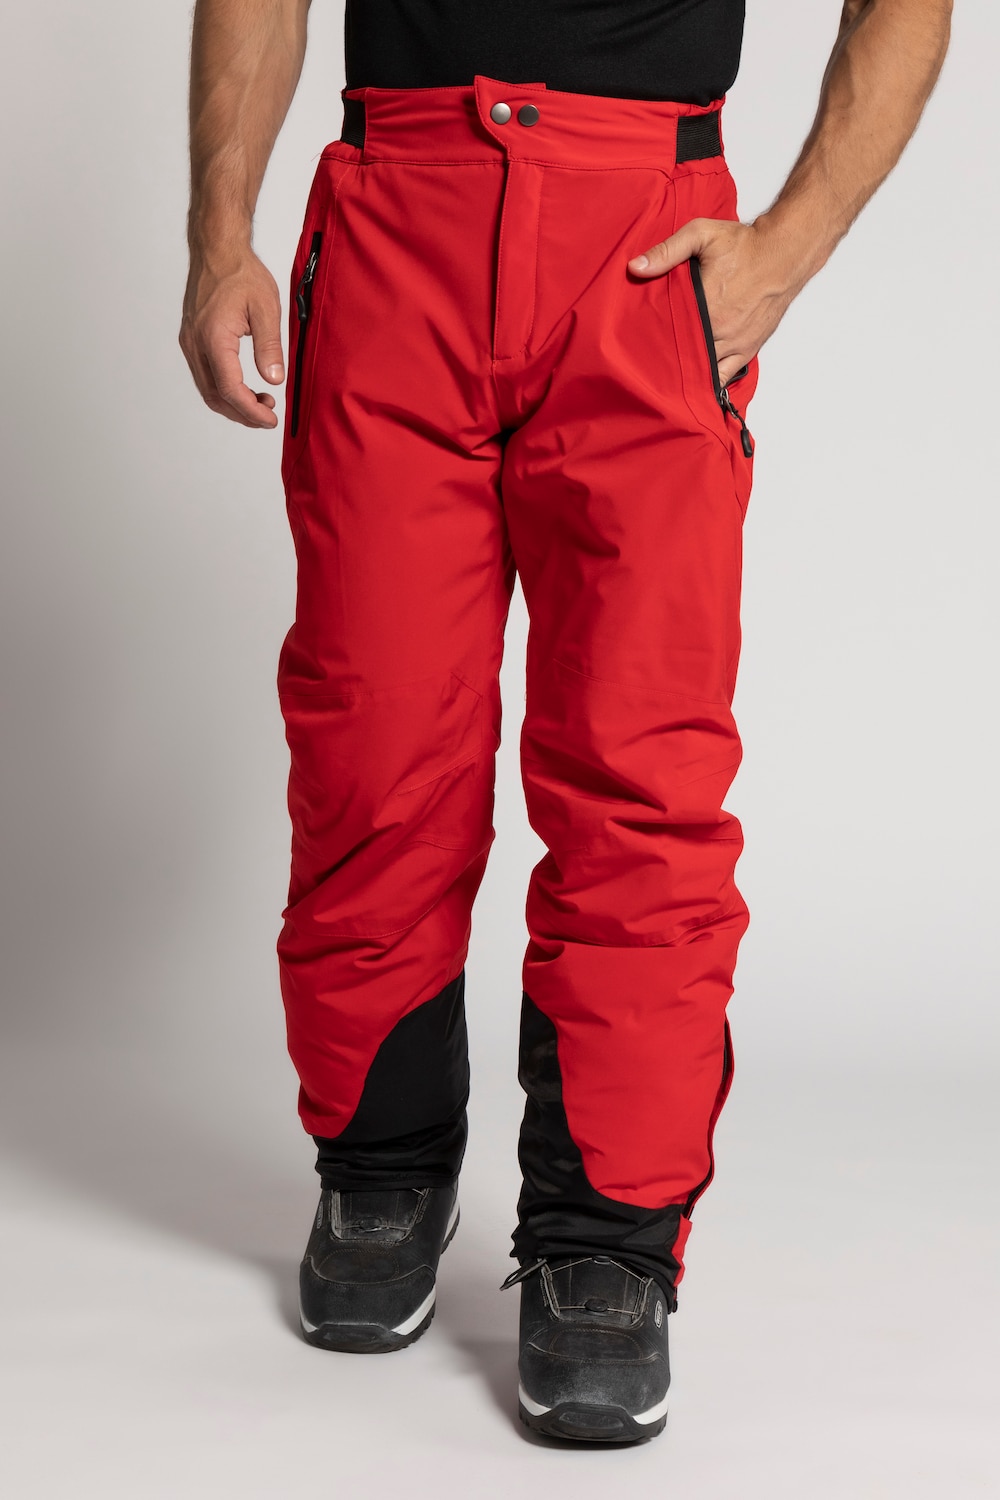 Grote Maten skibroek, Heren, rood, Maat: 5XL, Polyester, JP1880